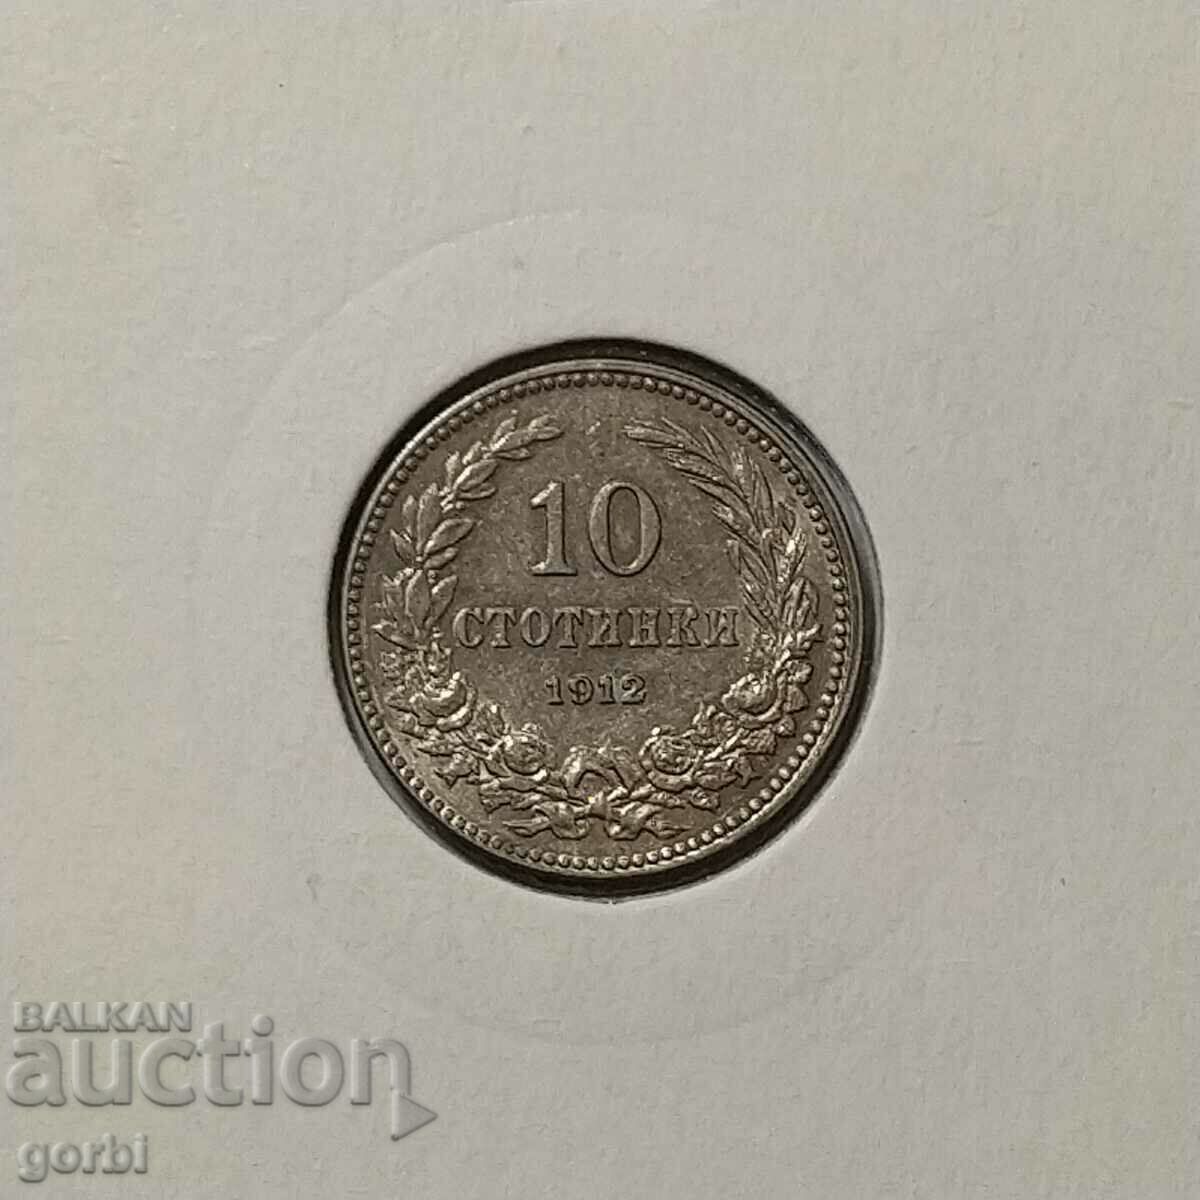 10 cents 1912. Εξαιρετικό για συλλογή!